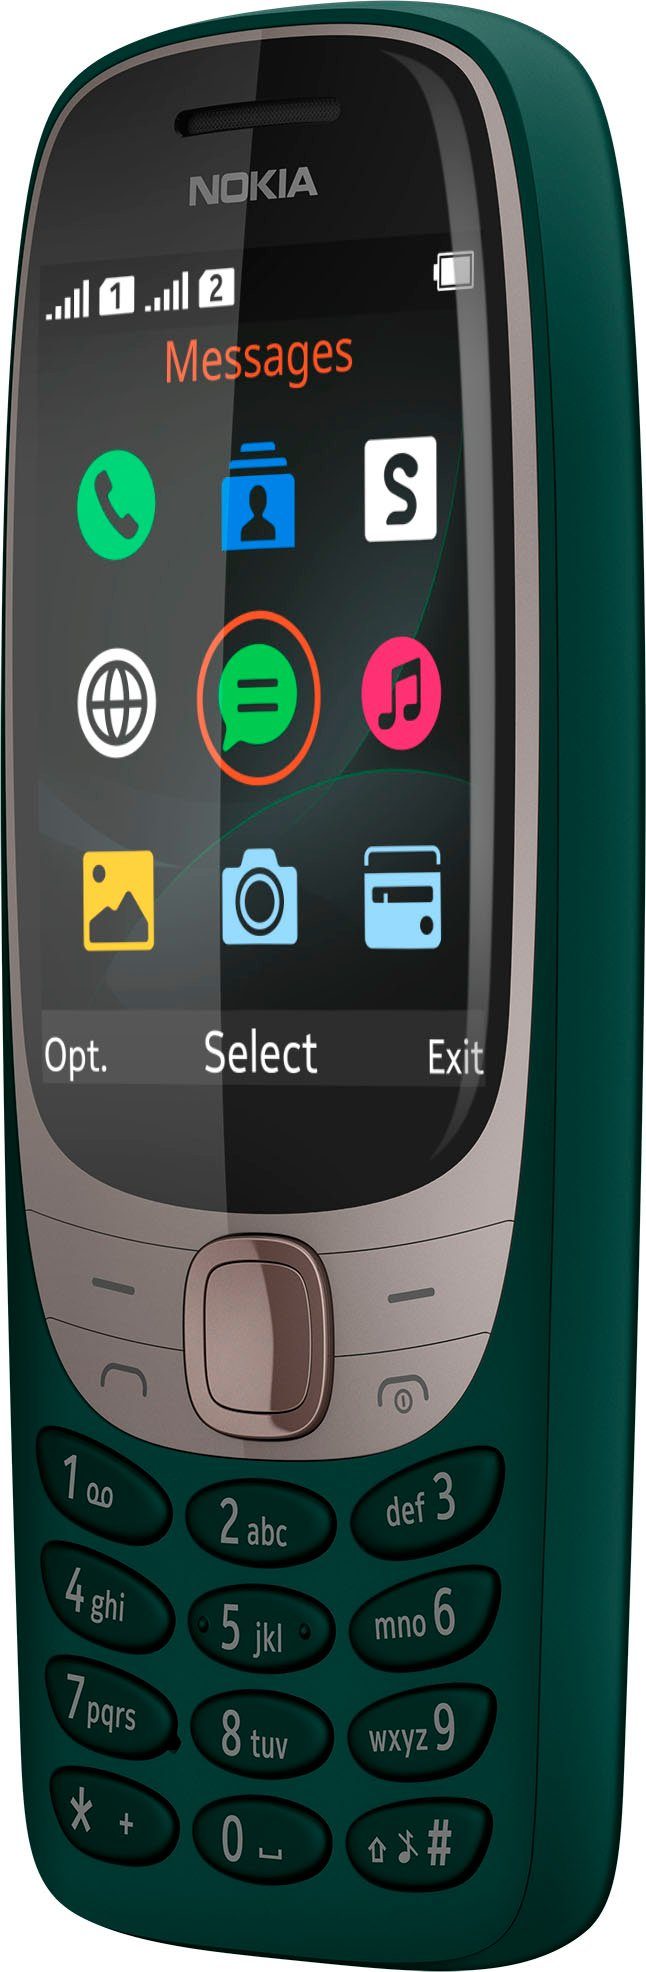 MicroSD-Kartensteckplatz 6310 Zoll, bis Nokia Smartphone GB Speicherplatz), GB (7,11 zu cm/2,8 unterstützt 32 0,016